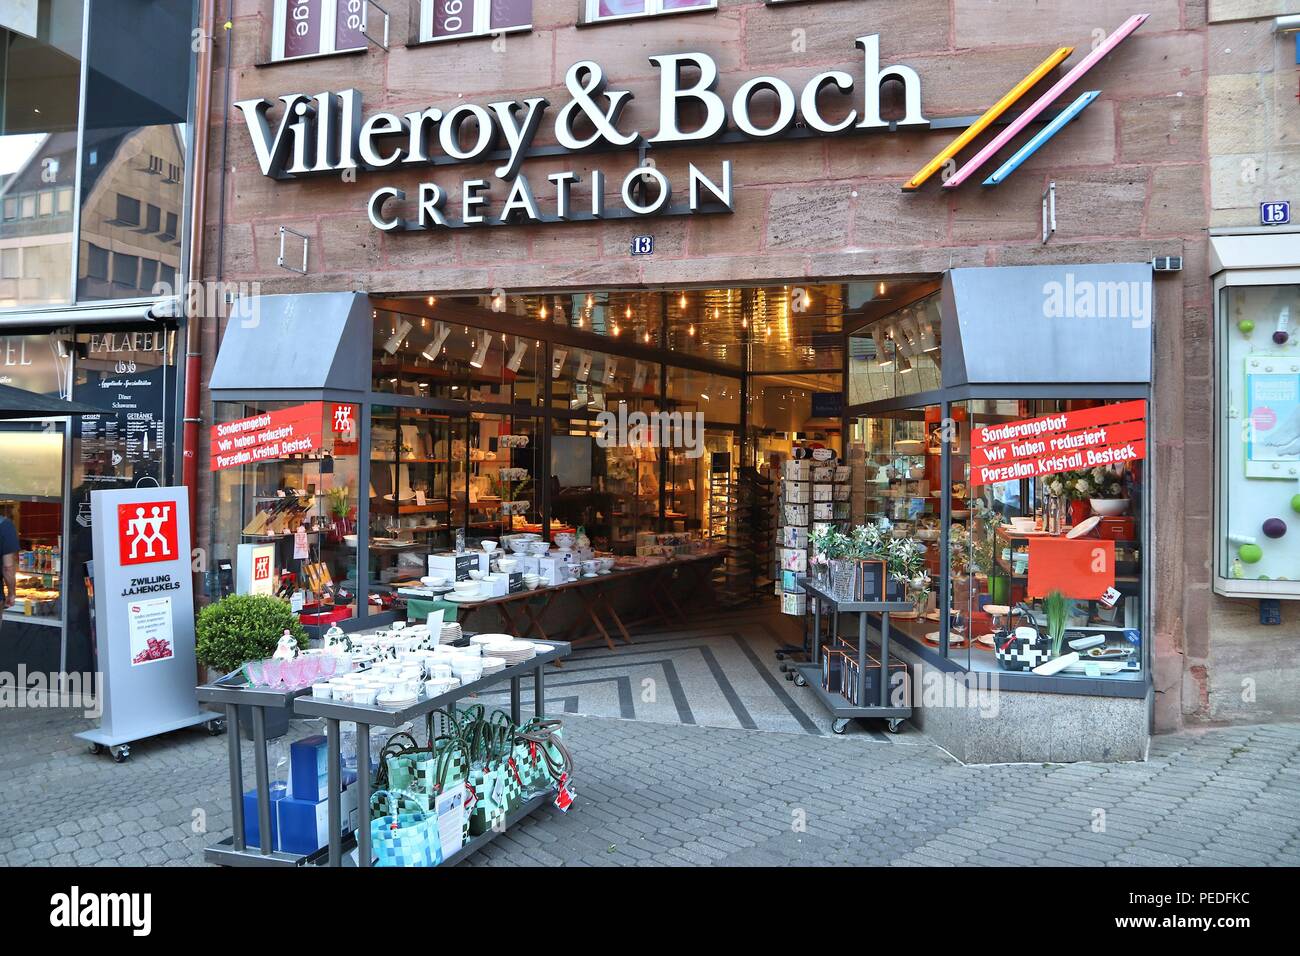 NUREMBERG, ALLEMAGNE - le 7 mai 2018 : Villeroy et Boch ustensiles de cuisine magasin de marque à Nuremberg, Allemagne. Villeroy & Boch est un grand c Fabrication de céramique Banque D'Images